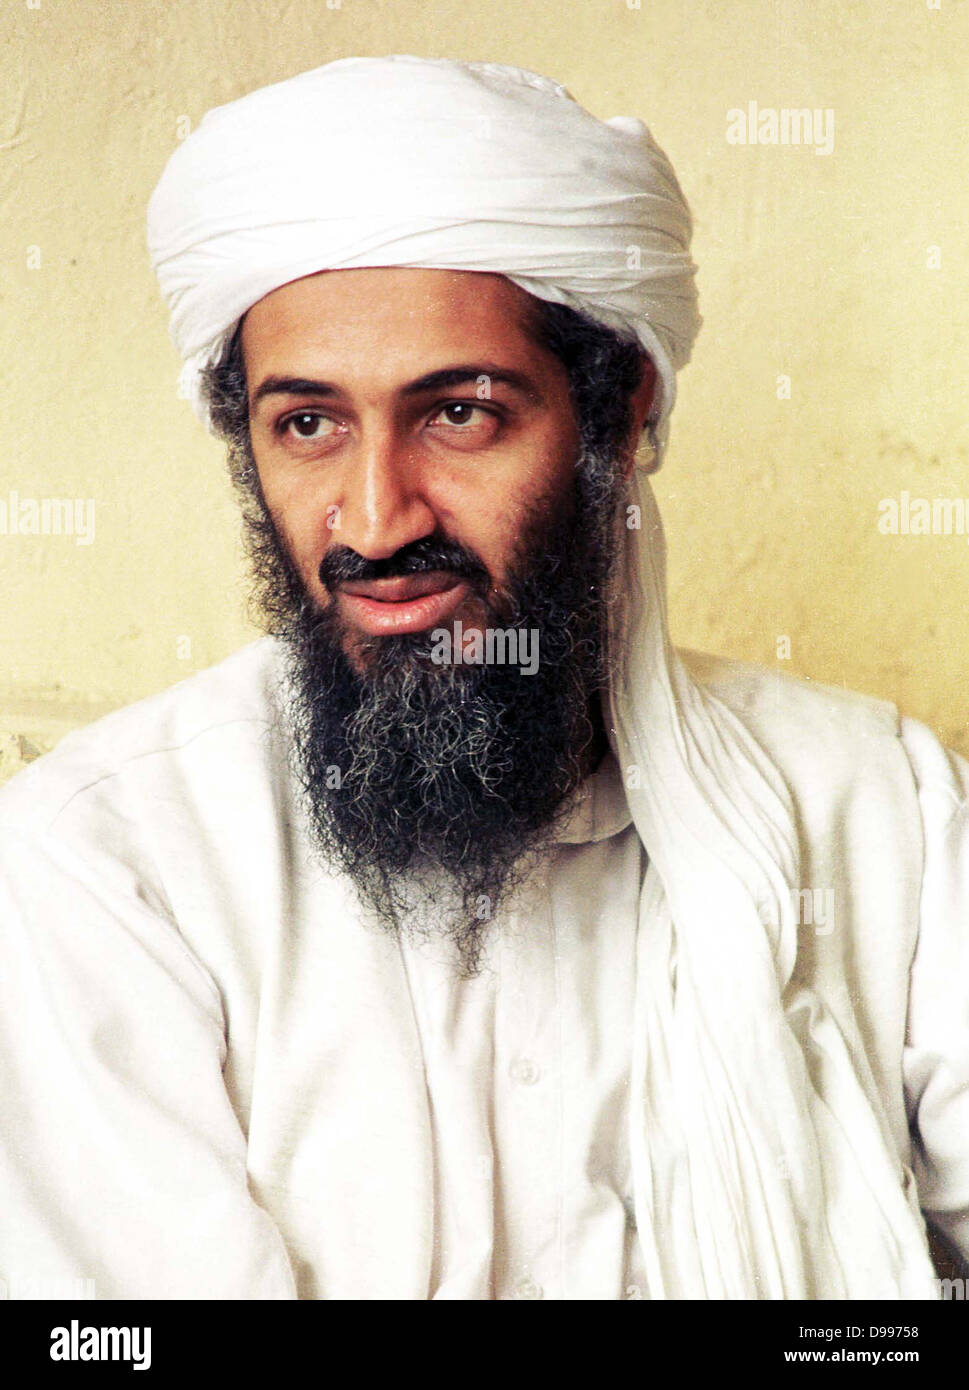 Oussama ben Laden né le 10 mars 1957. membre de la famille Ben Laden en Arabie éminent et le fondateur de l'organisation extrémiste islamique al-Qaïda, mieux connu pour les attaques du 11 septembre contre les États-Unis et de nombreux autres grand nombre de victimes des attaques contre des cibles civiles et militaires. Banque D'Images